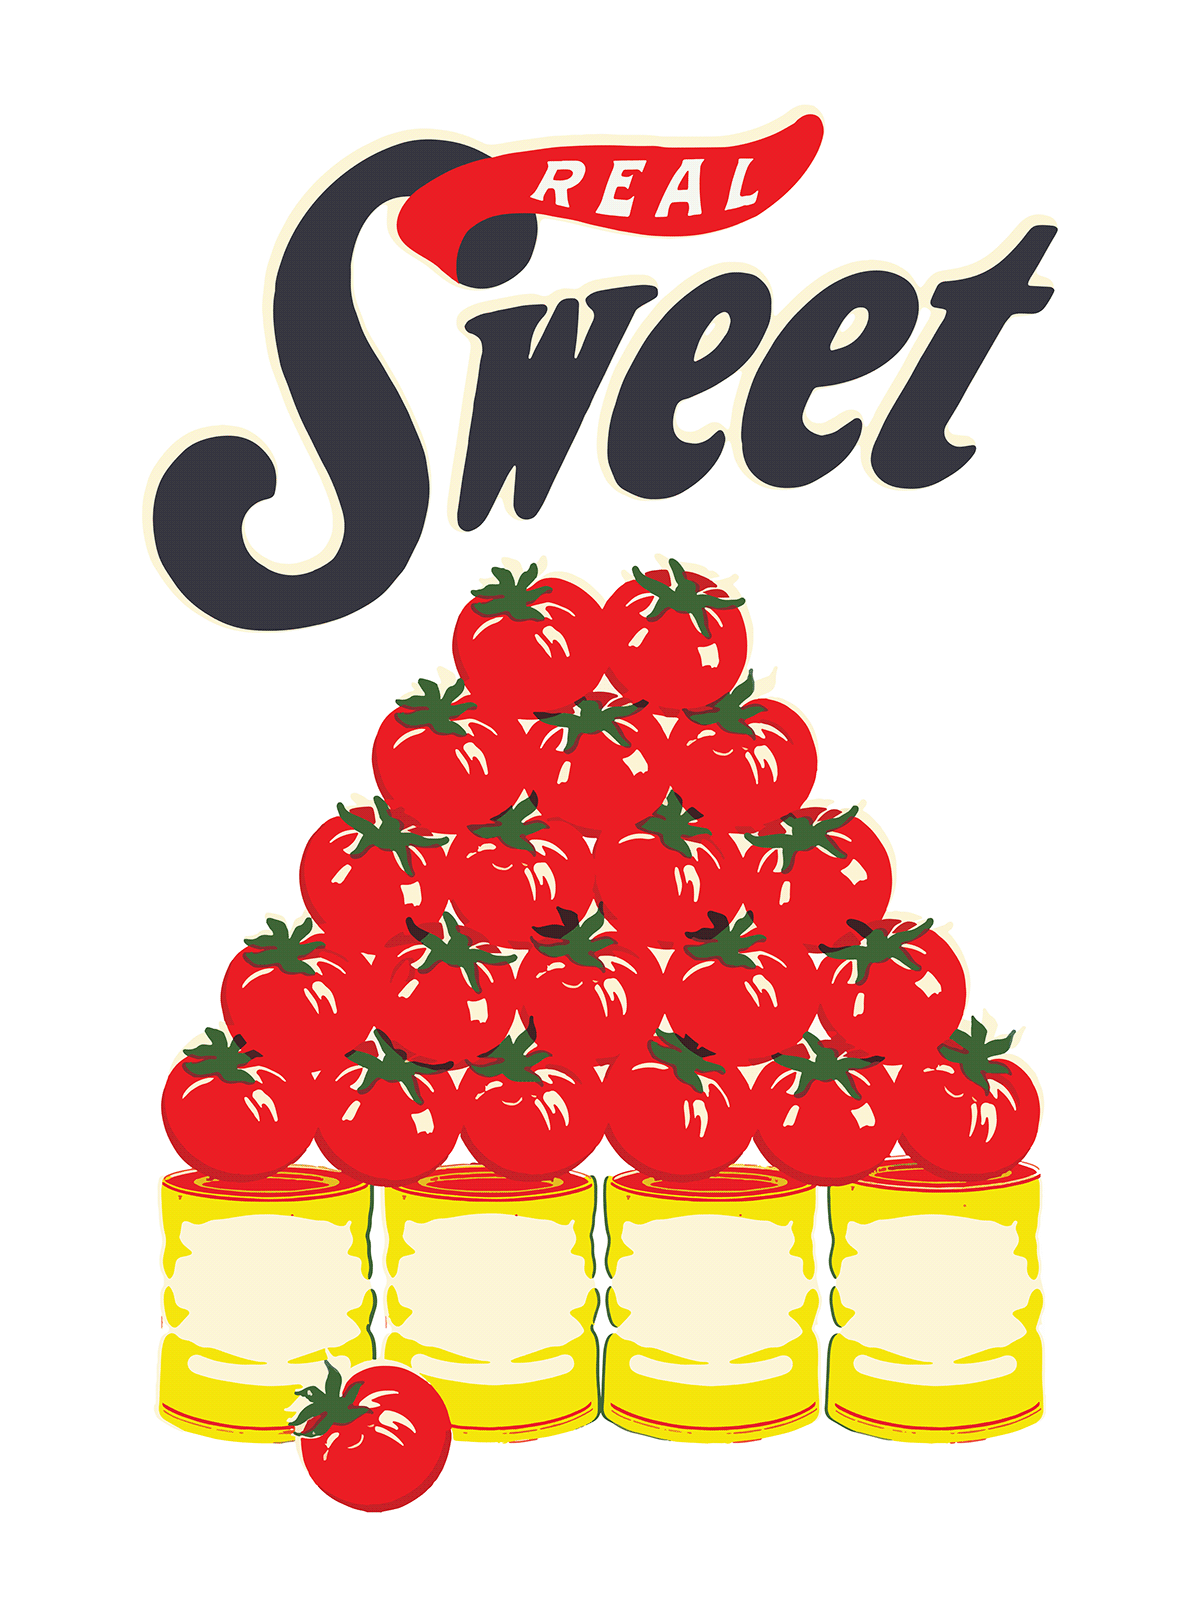 canned tomato fruit artwork Fruit Illustration ILLUSTRATION  Tomato typography  